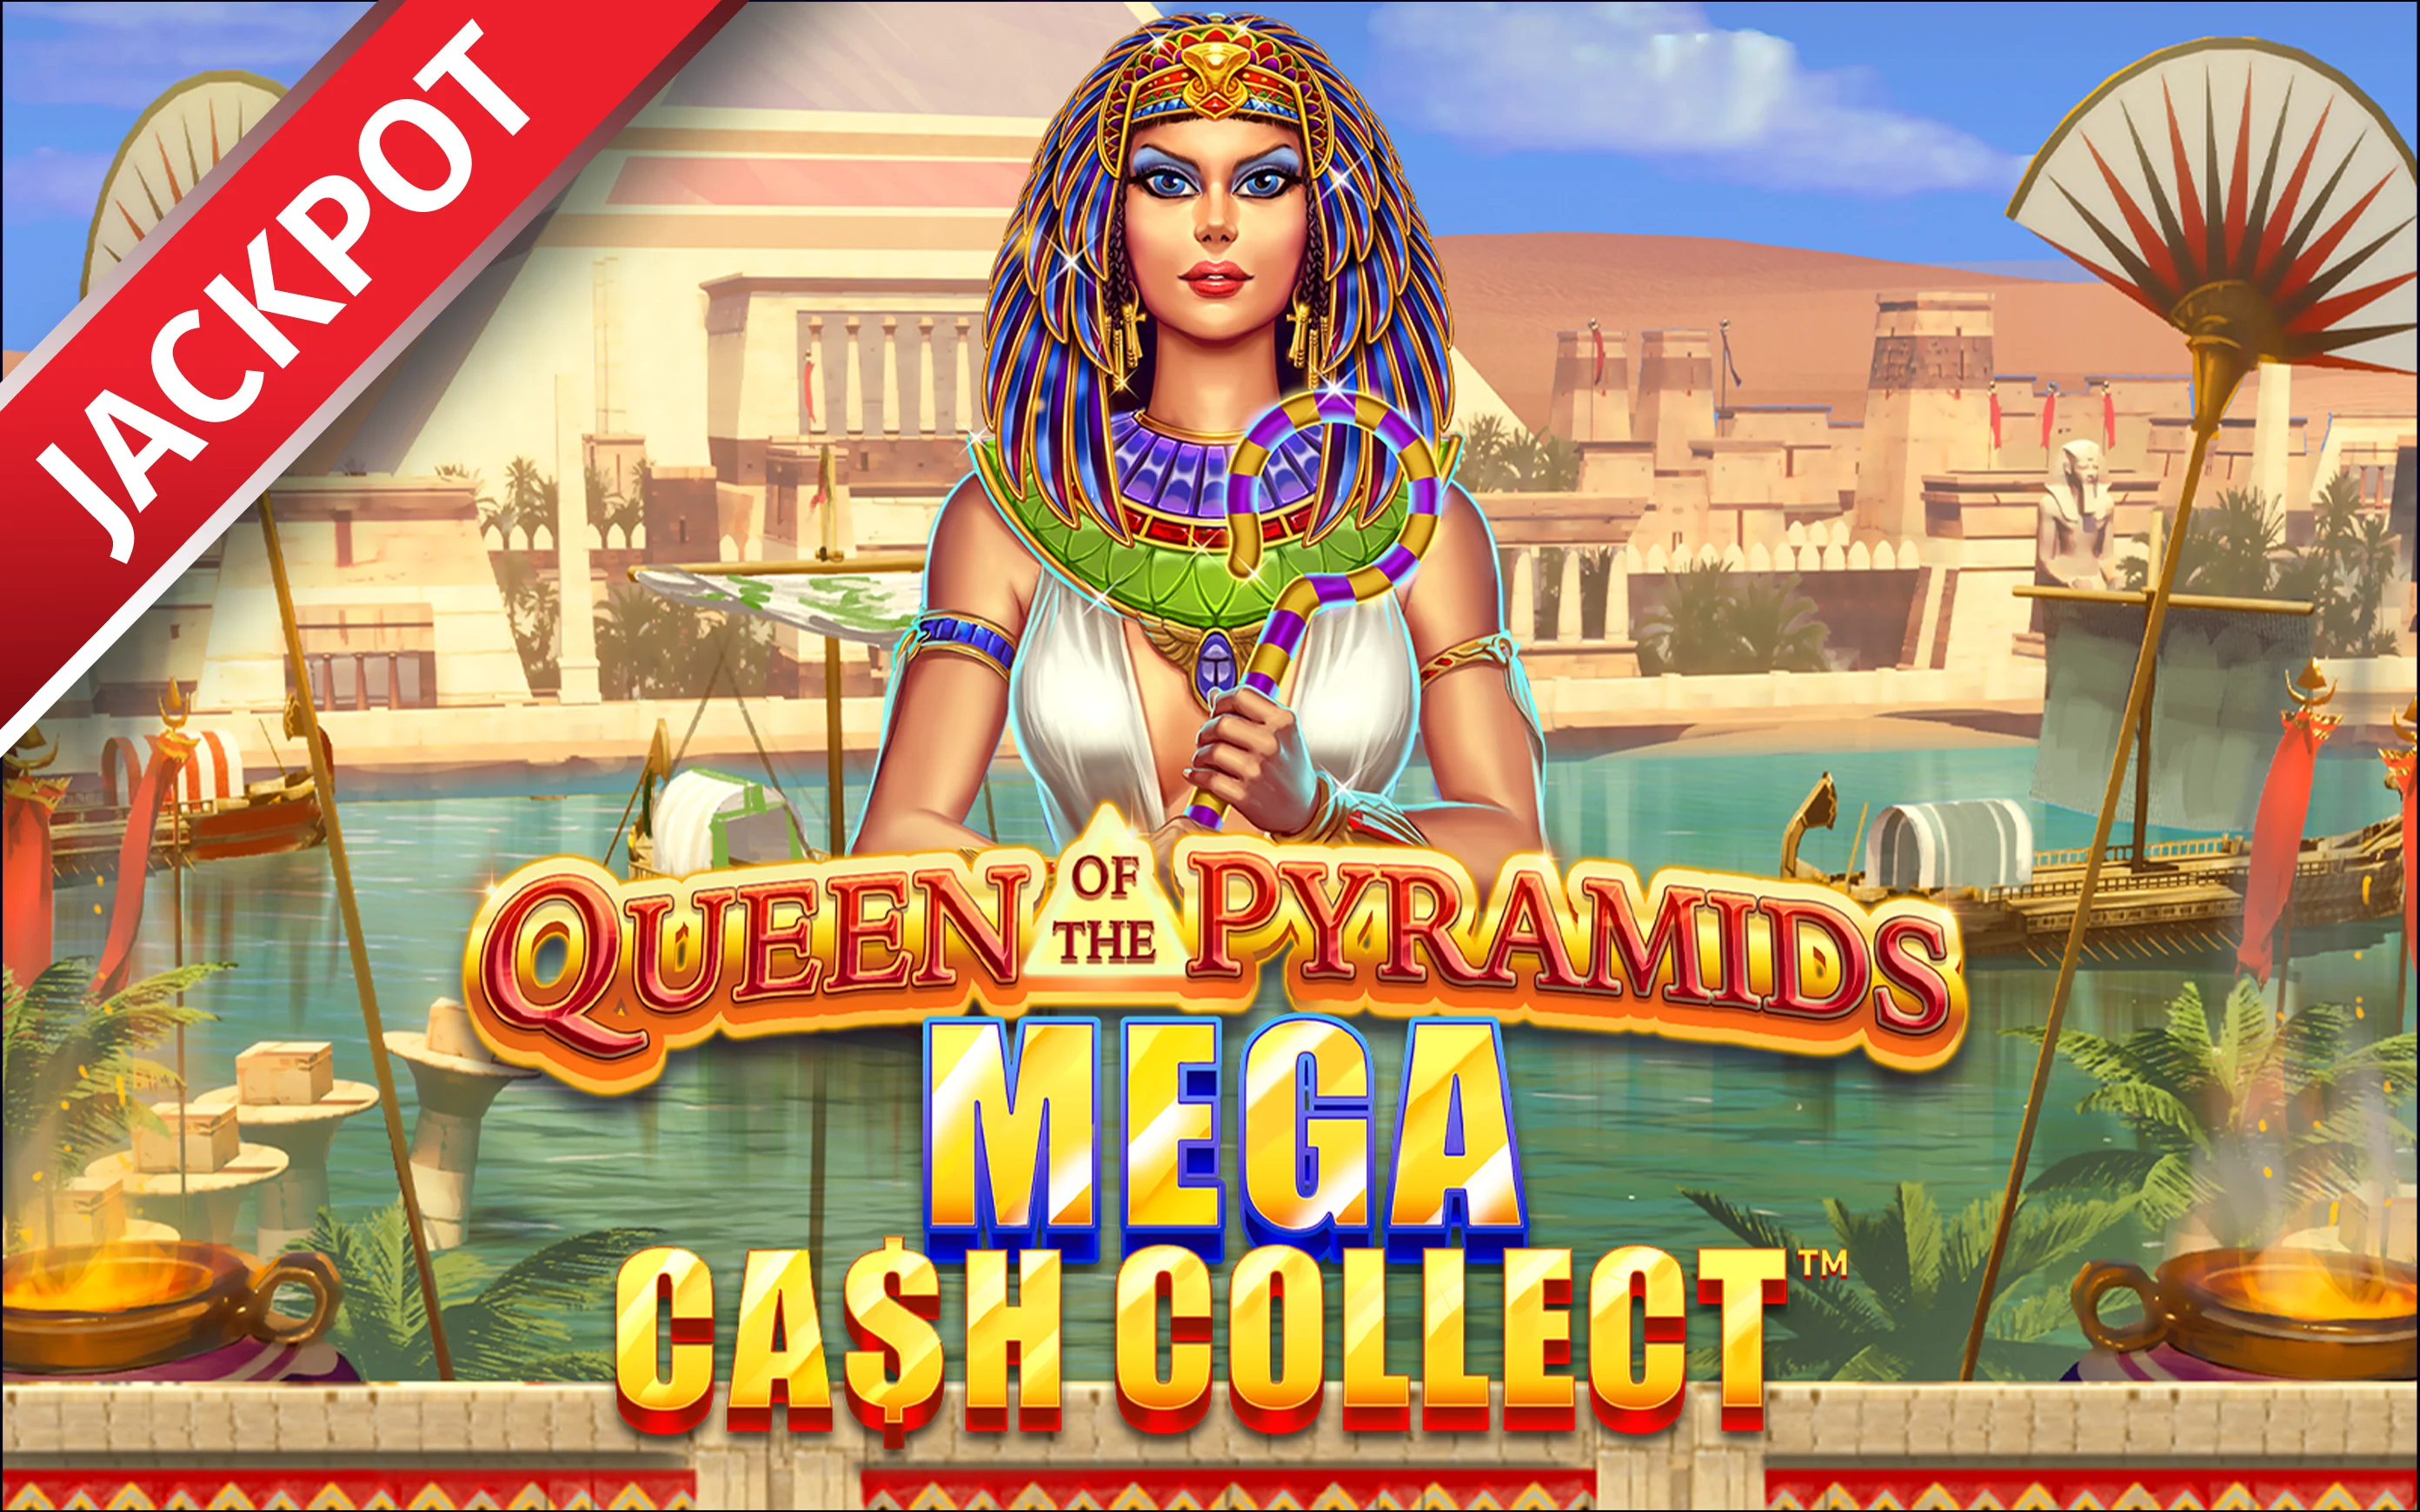 Luaj Queen of the Pyramids: Mega Cash Collect™ në kazino Starcasino.be në internet